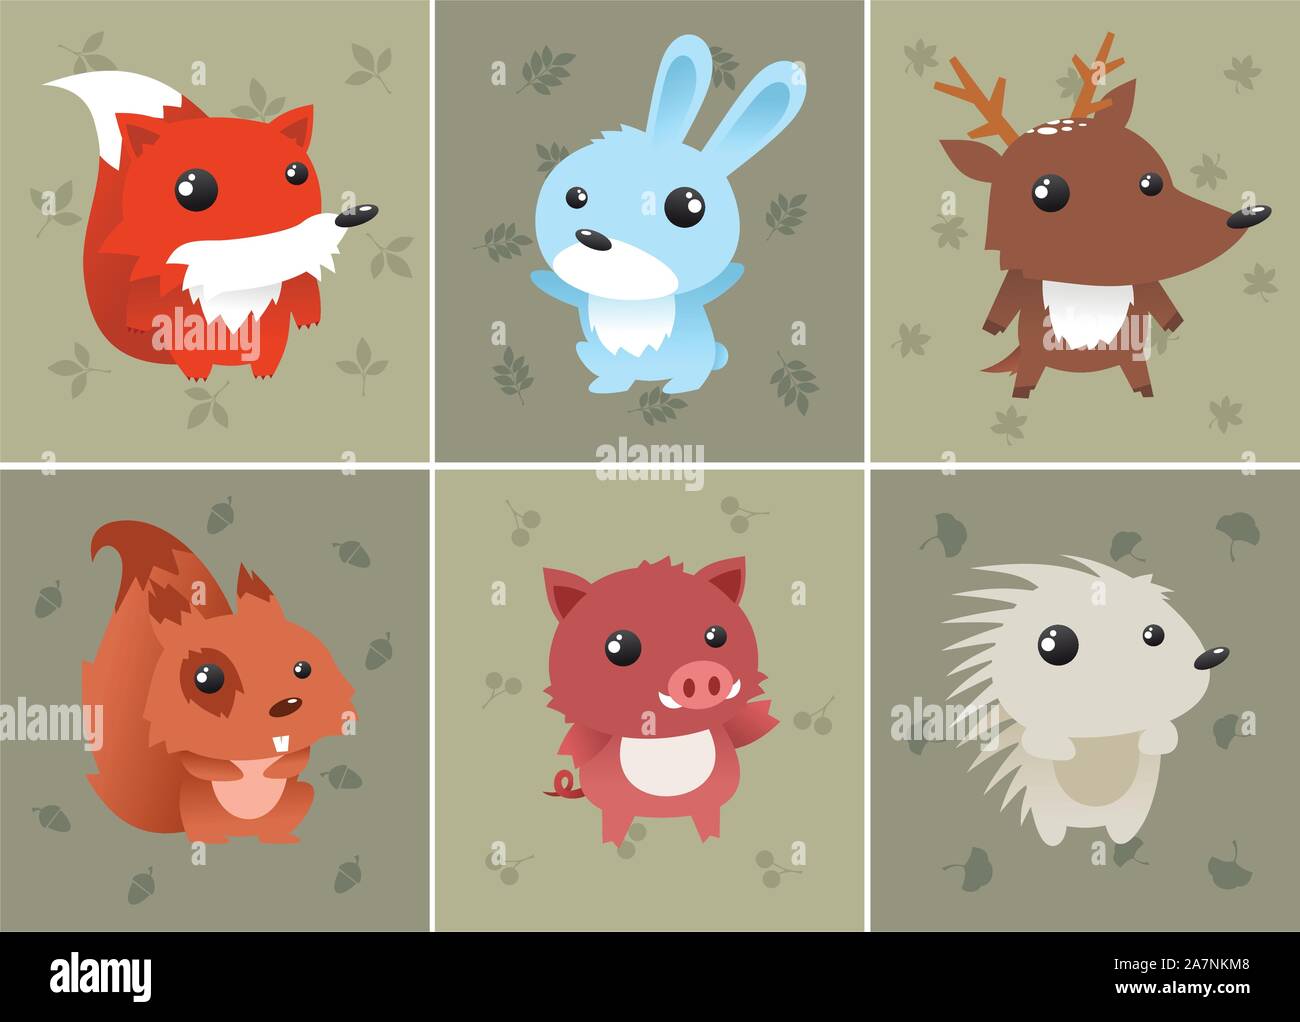 Forrest-Baby-Tiere-Set beinhaltet: Eichhörnchen, Igel, Fuchs, Hase, Reh und Wildschwein. Kann als Computer-Icons verwendet werden. Vektor-Illustration. Stock Vektor